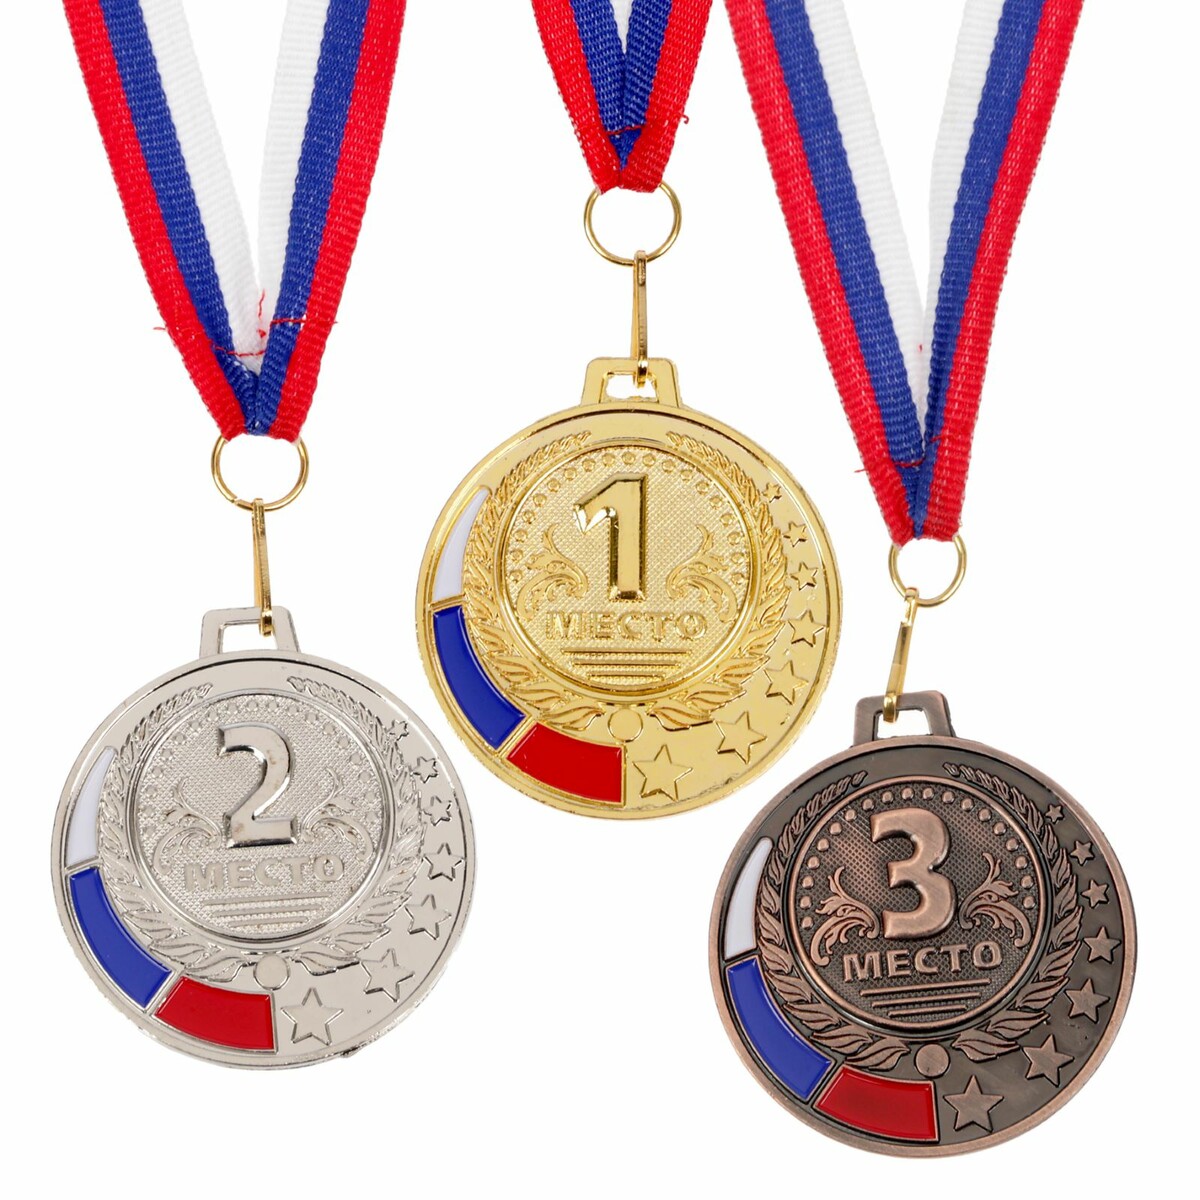 Медаль призовая 062 диам 5 см. 1 место, триколор. цвет зол. с лентой медаль призовая 013 диам 5 см 2 место триколор сер с лентой